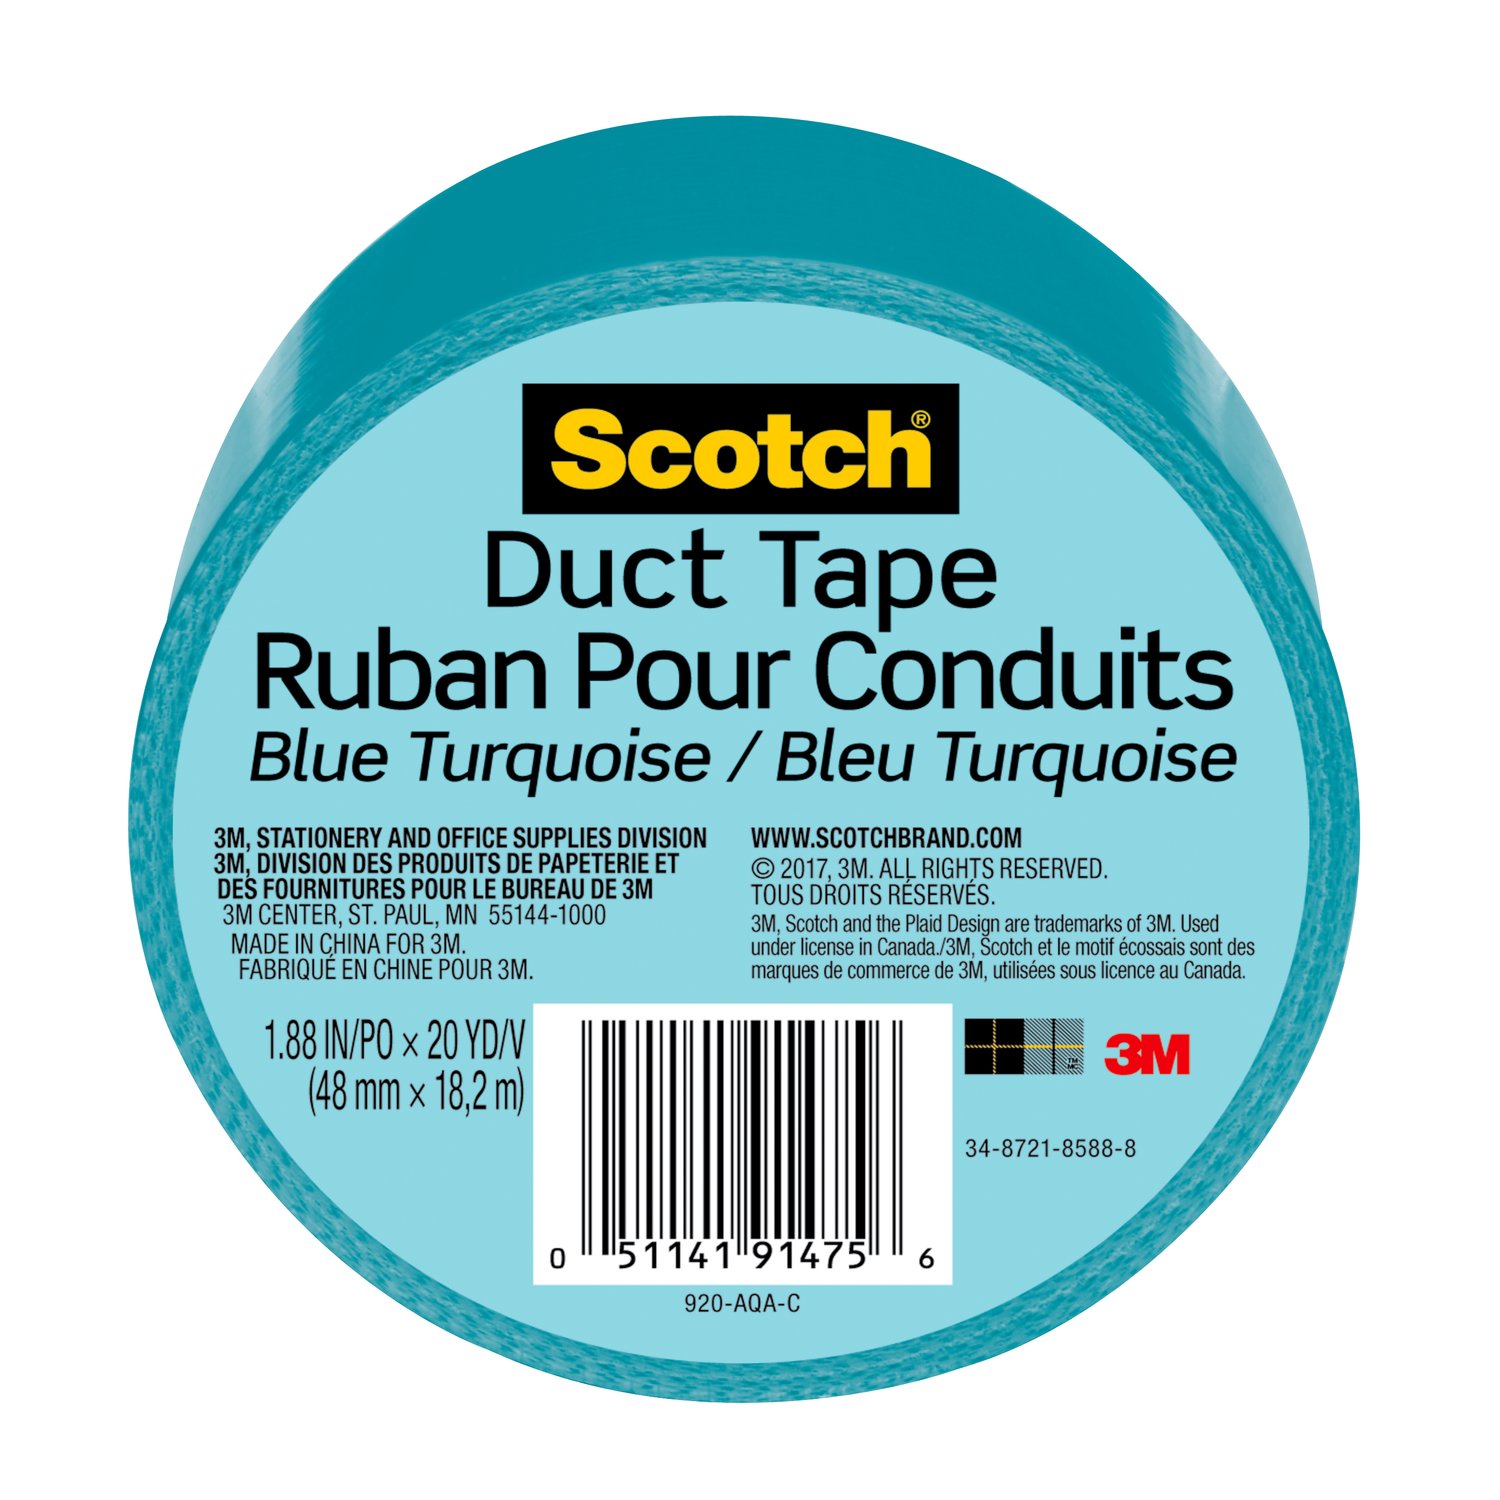 7100166667 - Scotch Duct Tape 920-AQA-C, 1.88 in x 20 yd (48 mm x 18,2 m), Aqua